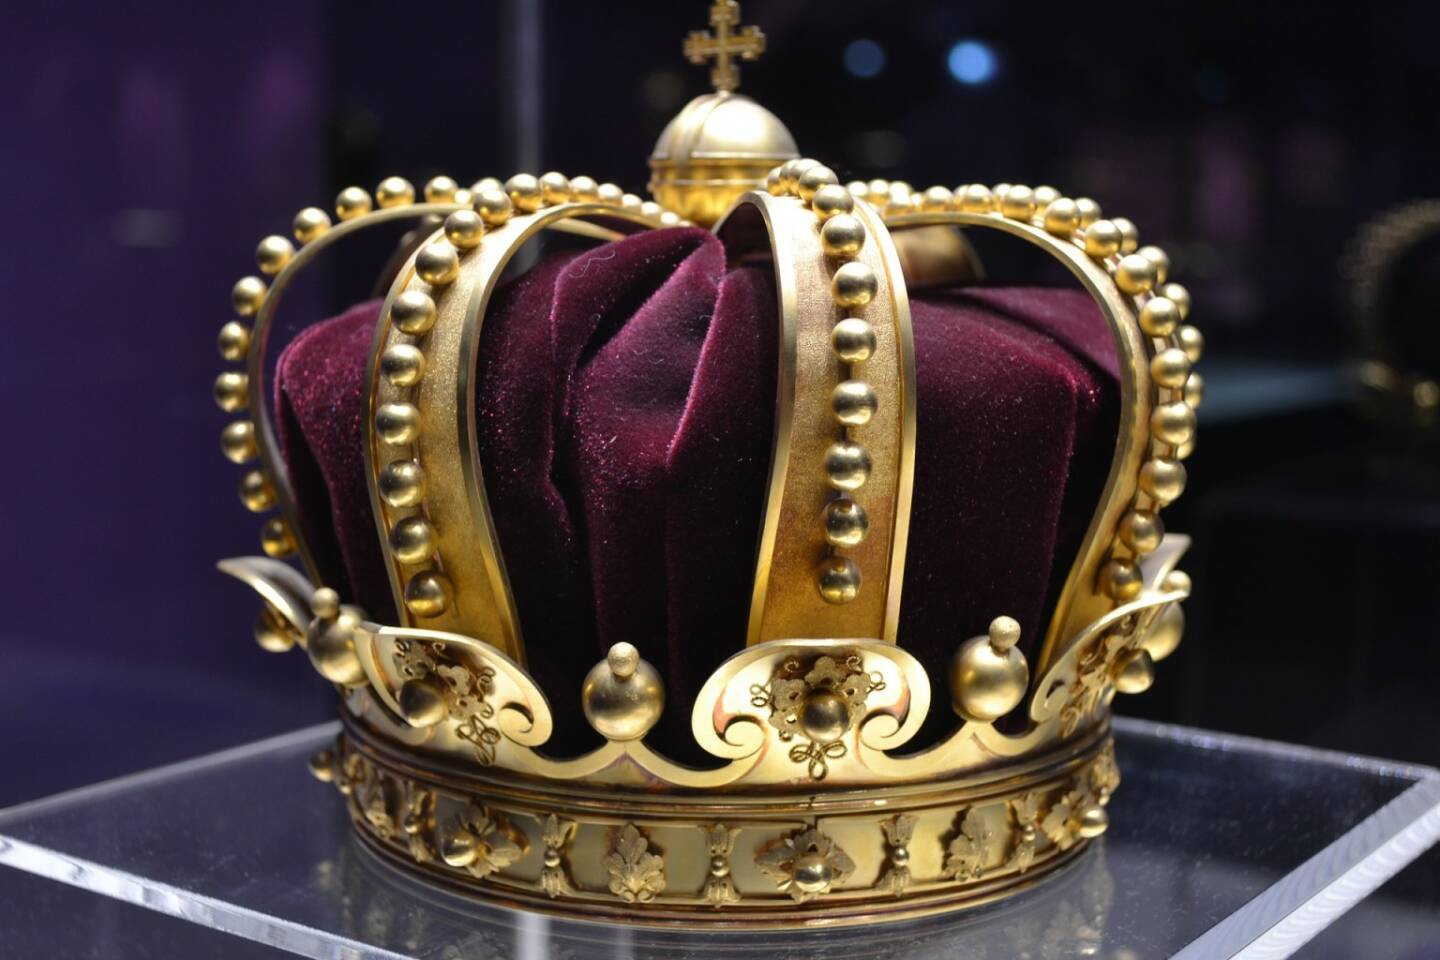 Krone, Krönung, Aristokrat, Kaiser, königlich, Sieger (Bild: Pixabay/talpeanu https://pixabay.com/de/könig-krone-geschichte-rumänien-1304612/ )